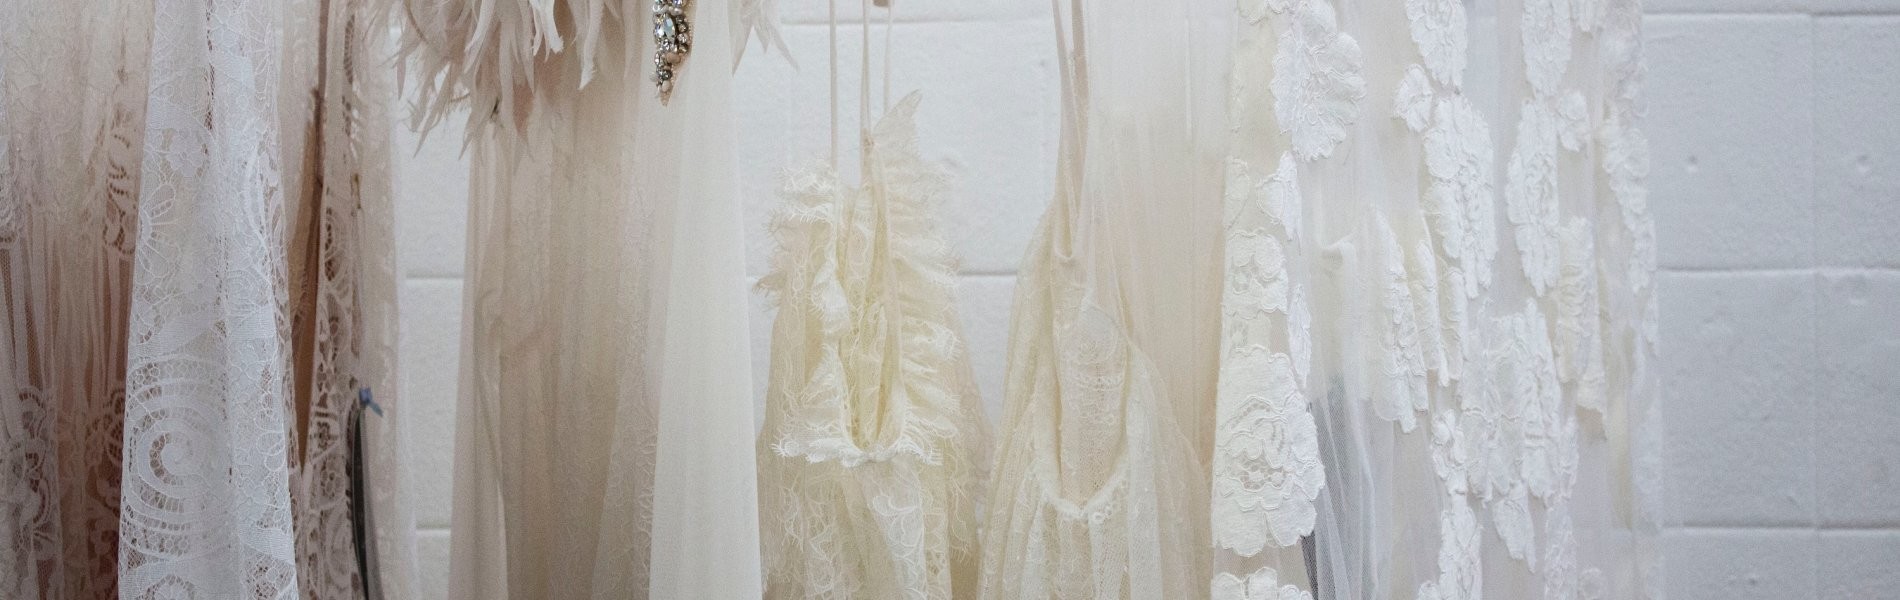 banniere envie dune tenue romantique optez pour une robe de mariee en tulle ultra tendance